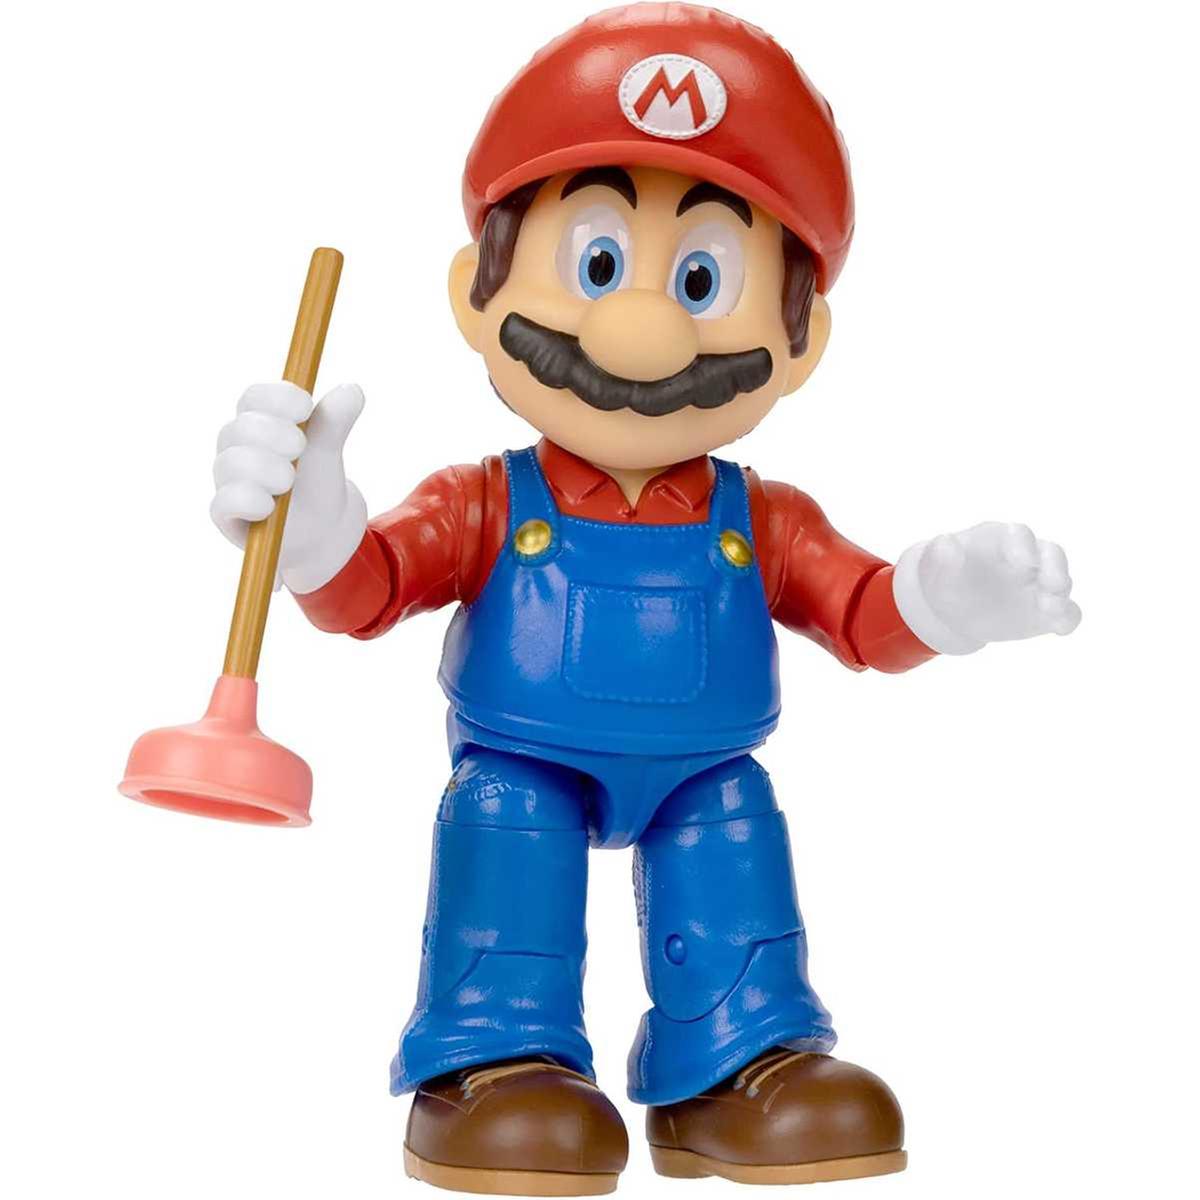 Super Mario Odyssey é indicado a seis categorias do evento The